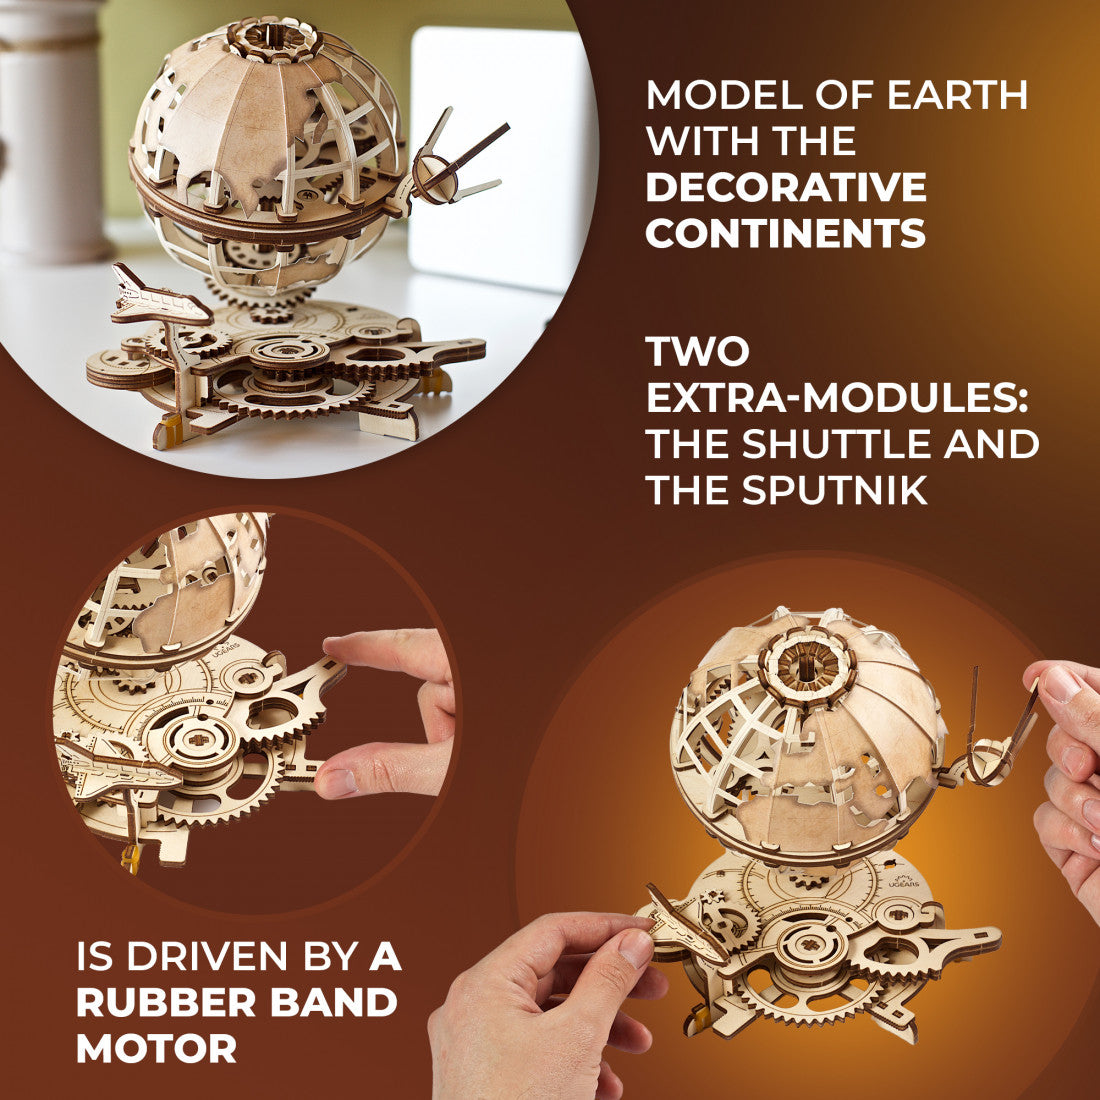 houten 3D puzzel - globus - puzzle en bois 3D